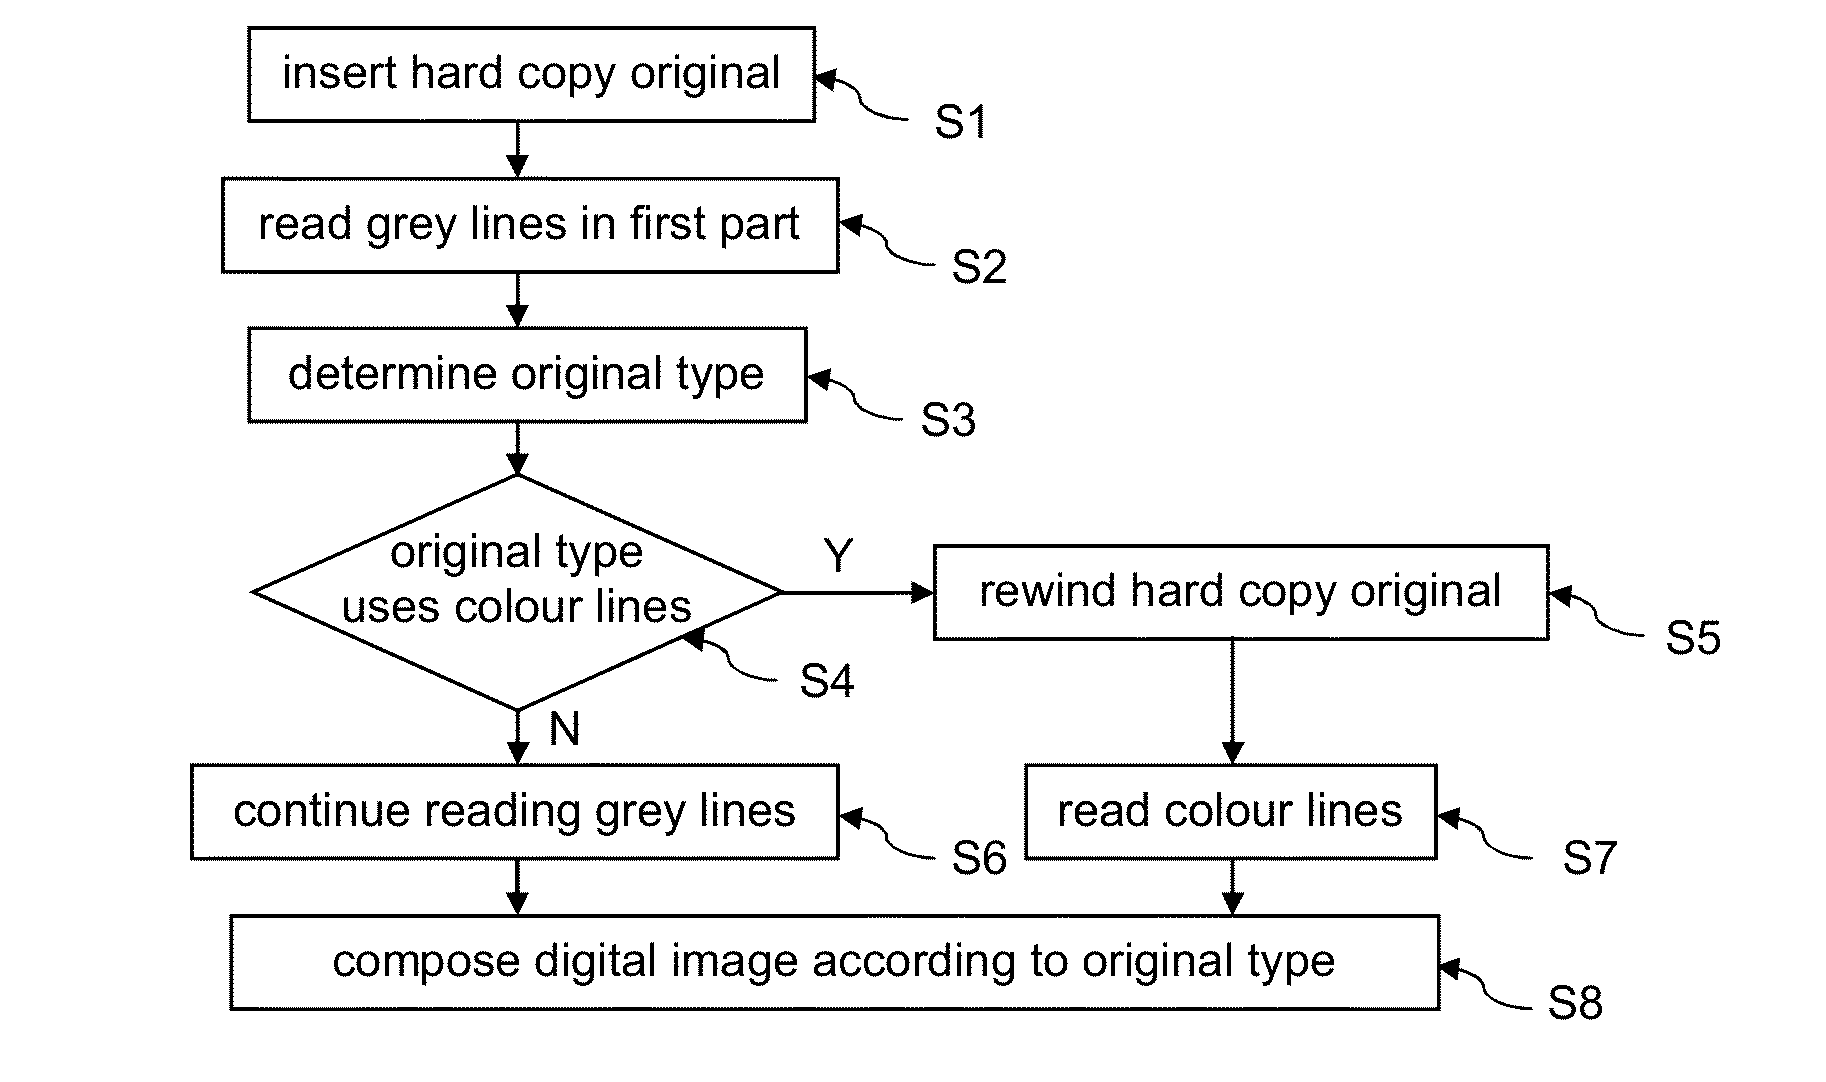 Method for scanning hard copy originals